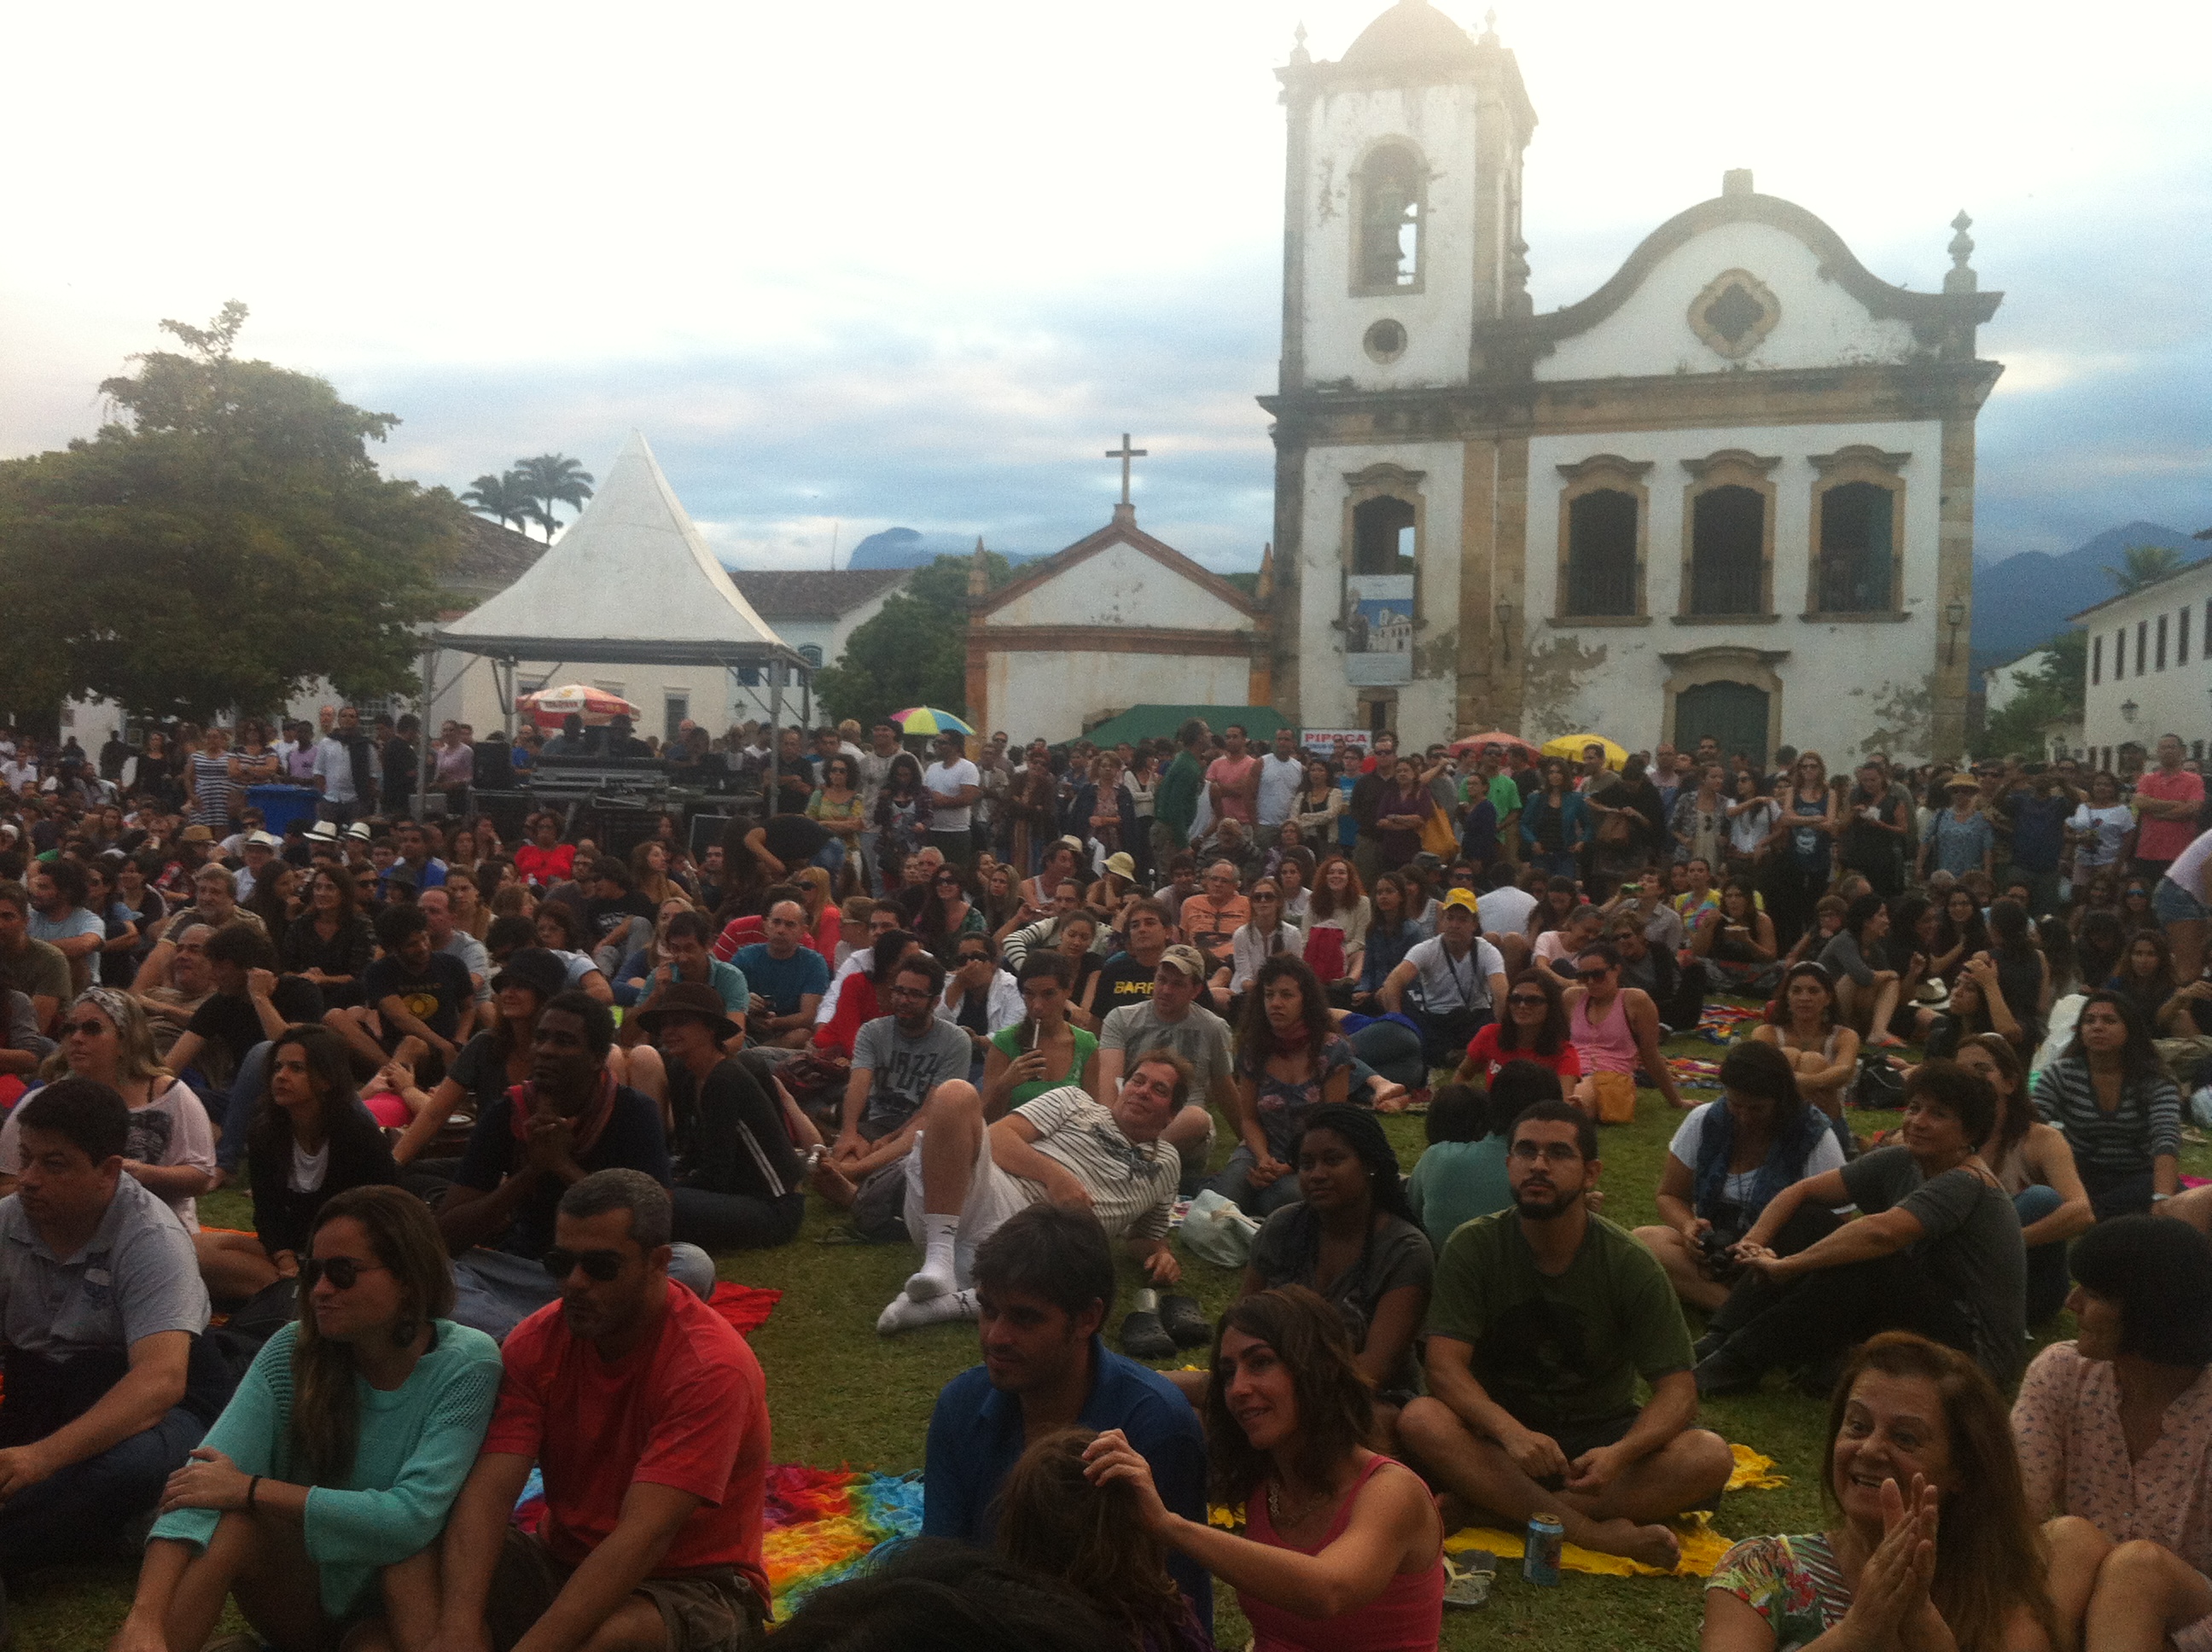 Público sentado no gramado em frente ao palco durante shows da tarde em frente à Igreja de Santa Rita. Muita gente sentada, num clima muito gostoso, público aplaudindo